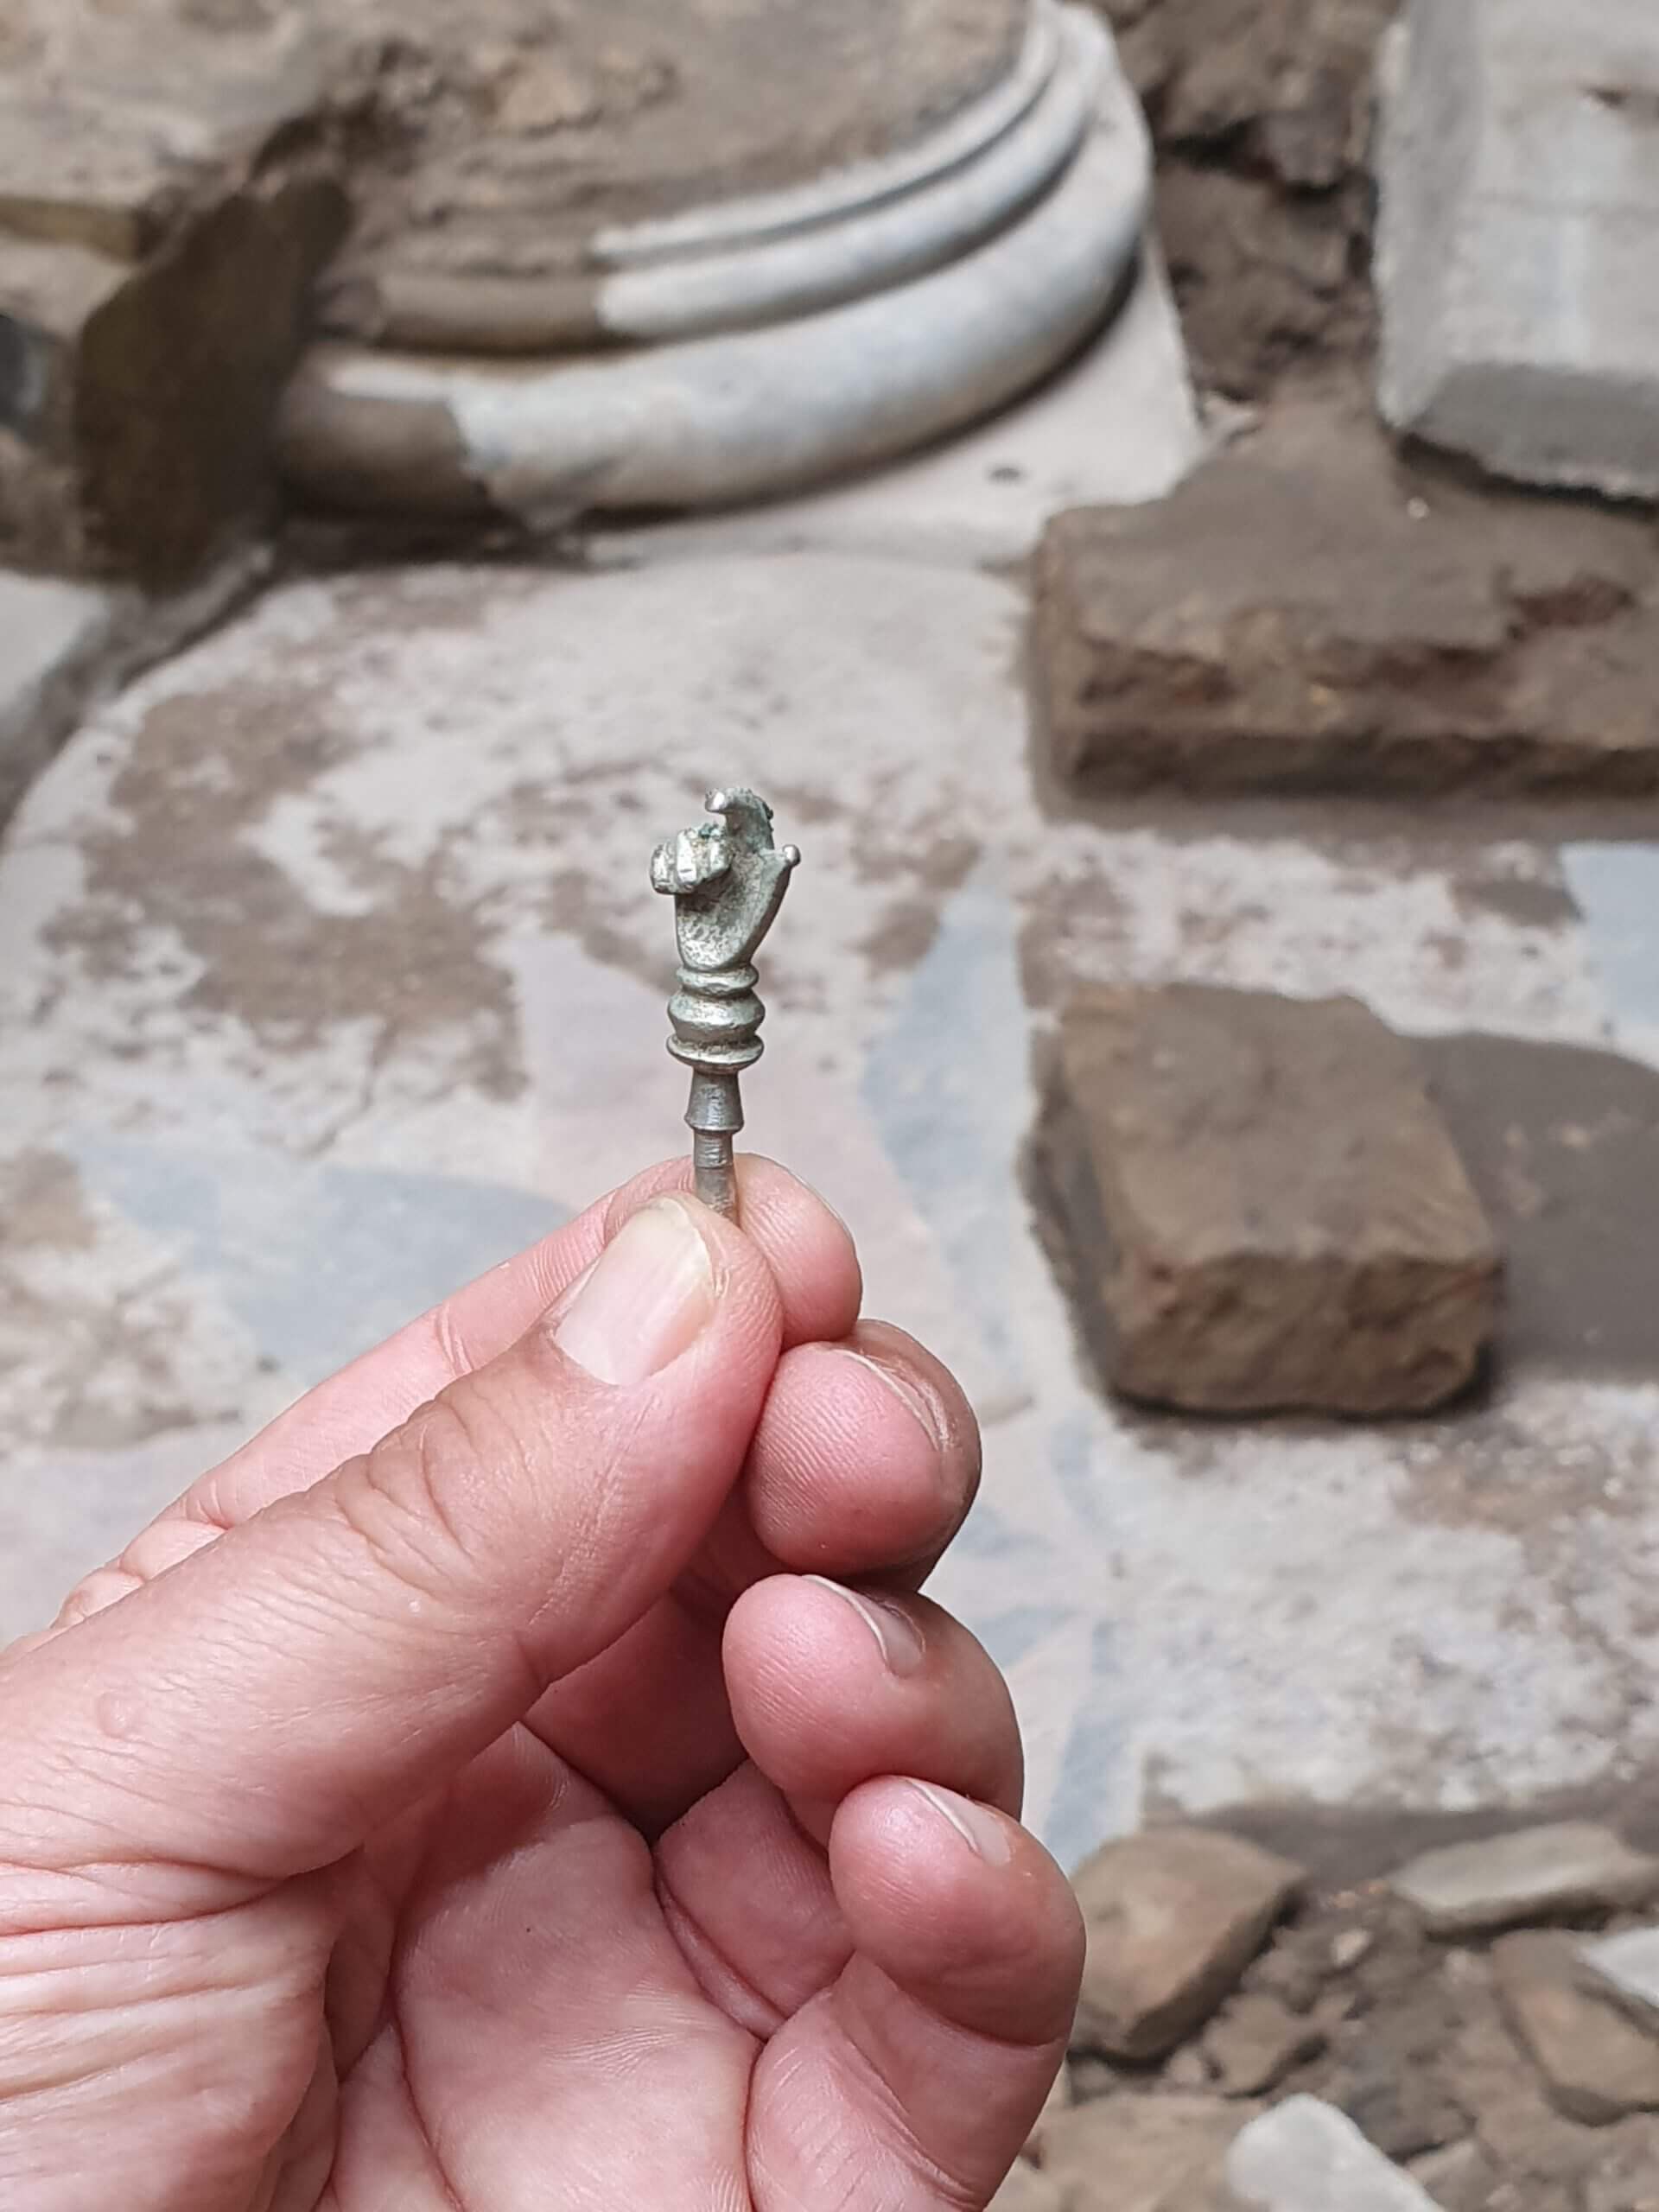 اليد الفضية التي تم الكشف عنها على خلفية منصة الكنيس حيث تم اكتشافها. تصوير جون سليجمان، هيئة الآثار الإسرائيلية